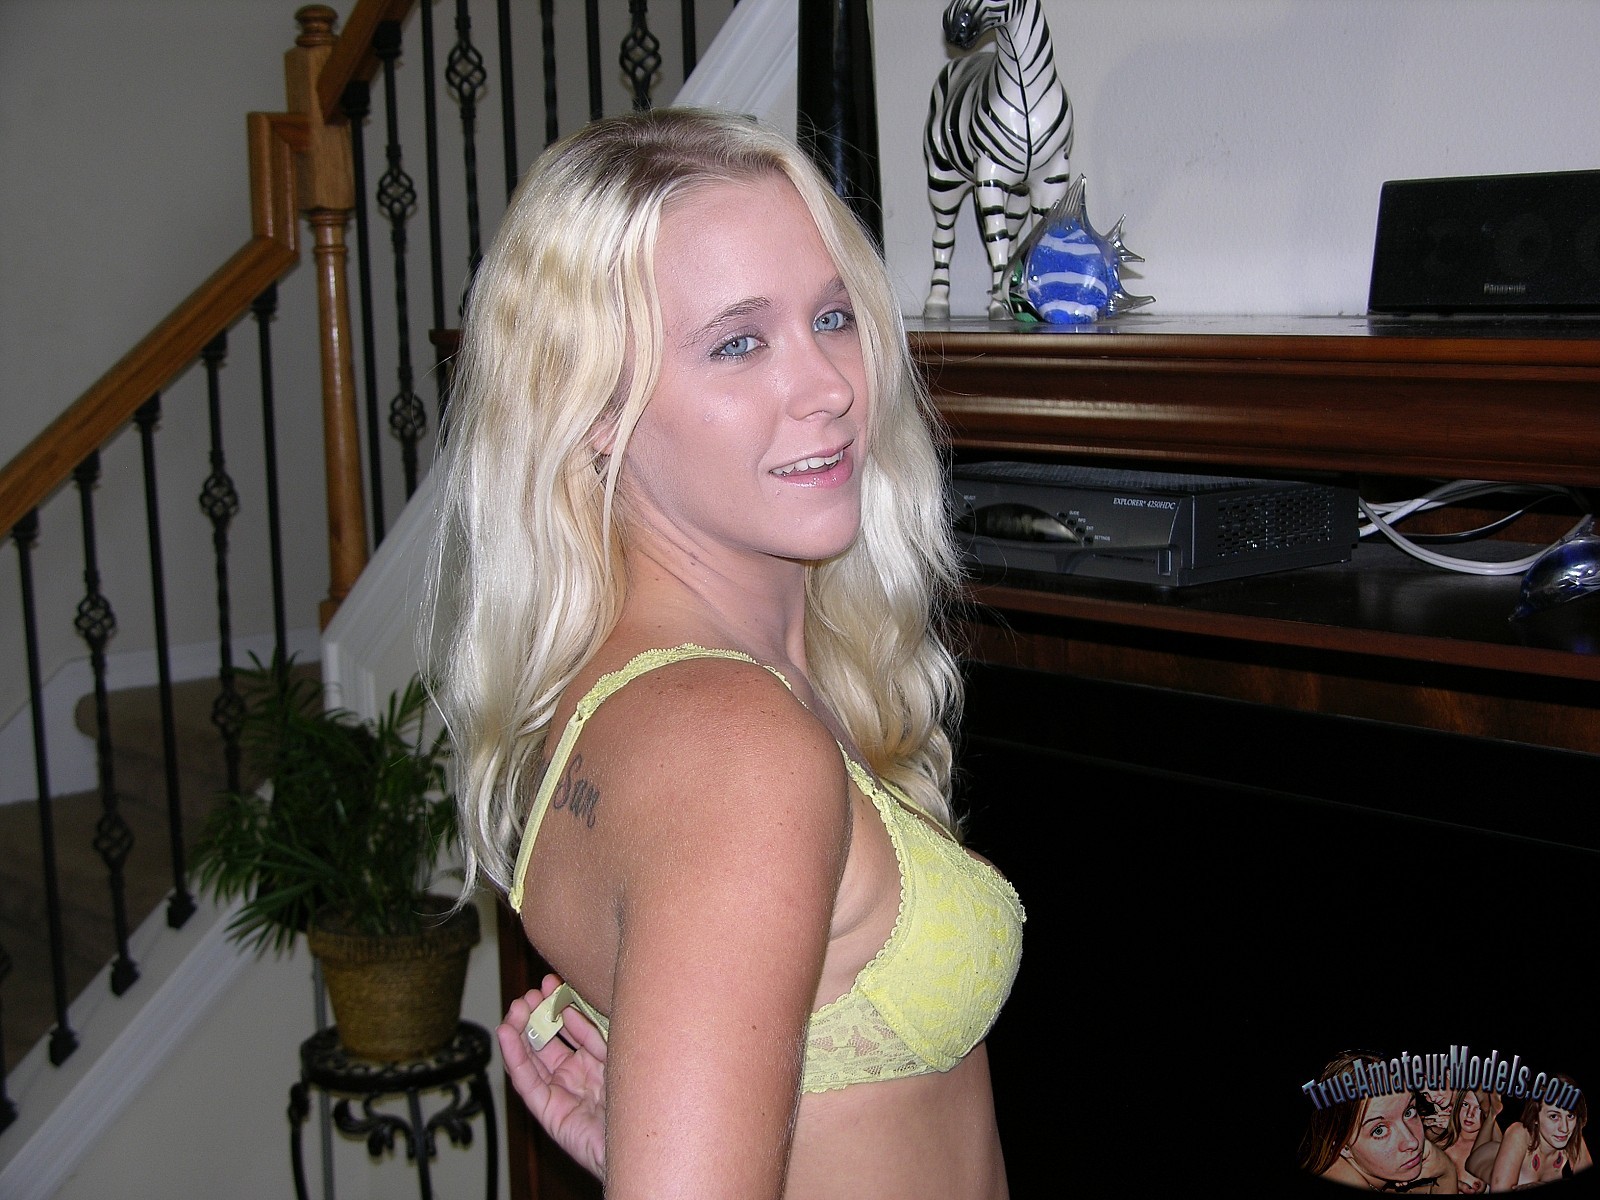 Une jeune fille blonde qui pose nue - julie de true amateur models
 #67288128